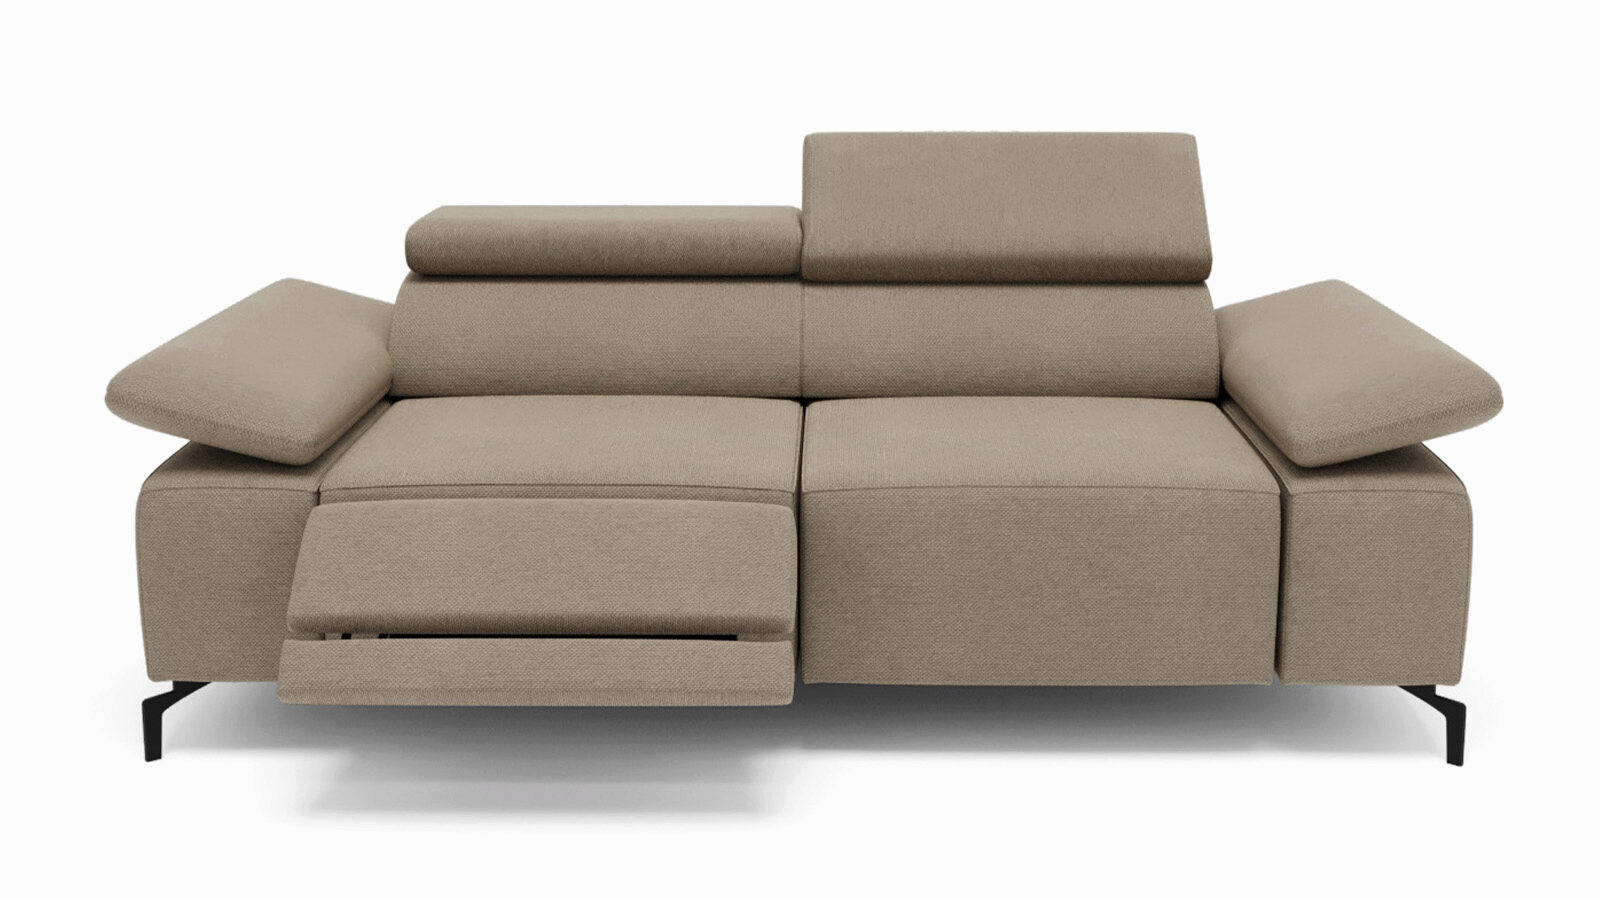 Прямой диван с реклайнером слева Square new прямой диван клайд механизм дельфин микровельвет коричневый